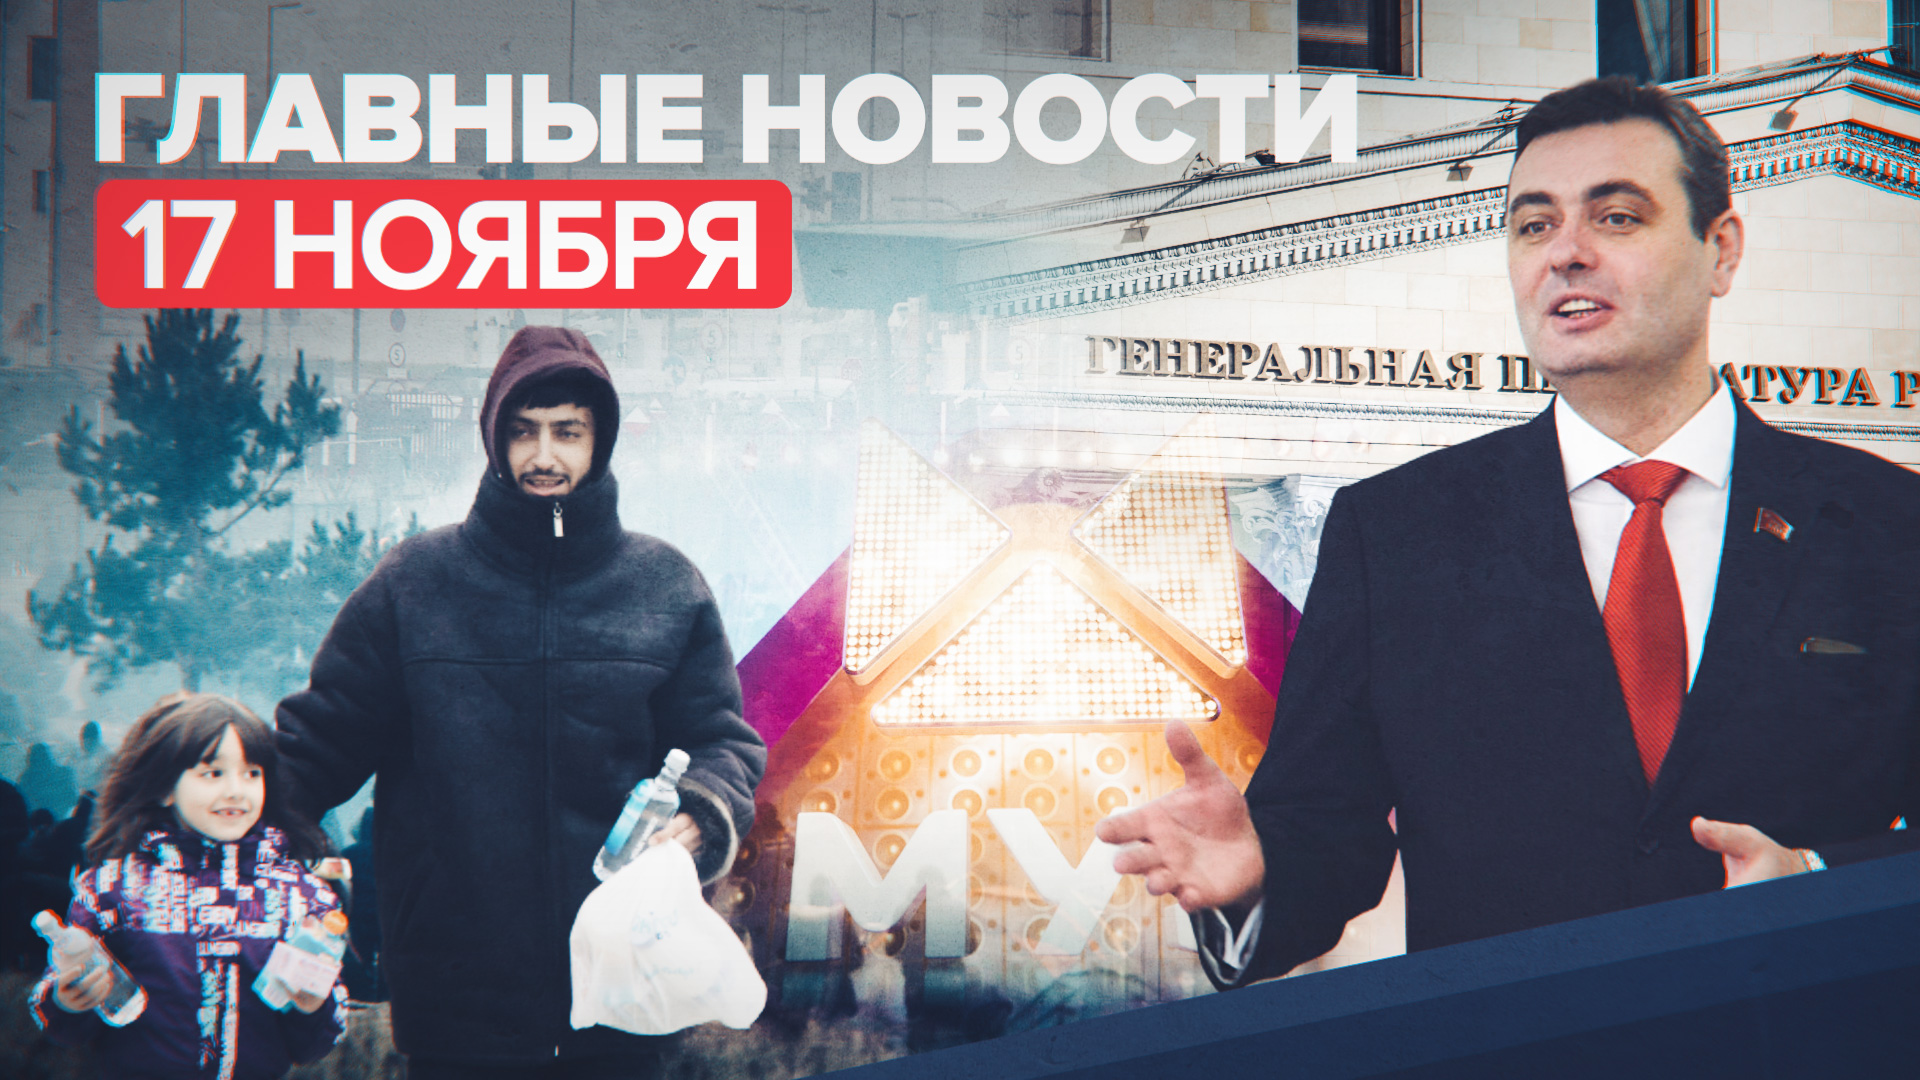 Новости дня — 17 ноября: штраф 1 млн рублей для МУЗ-ТВ, дело против депутата в Приморье